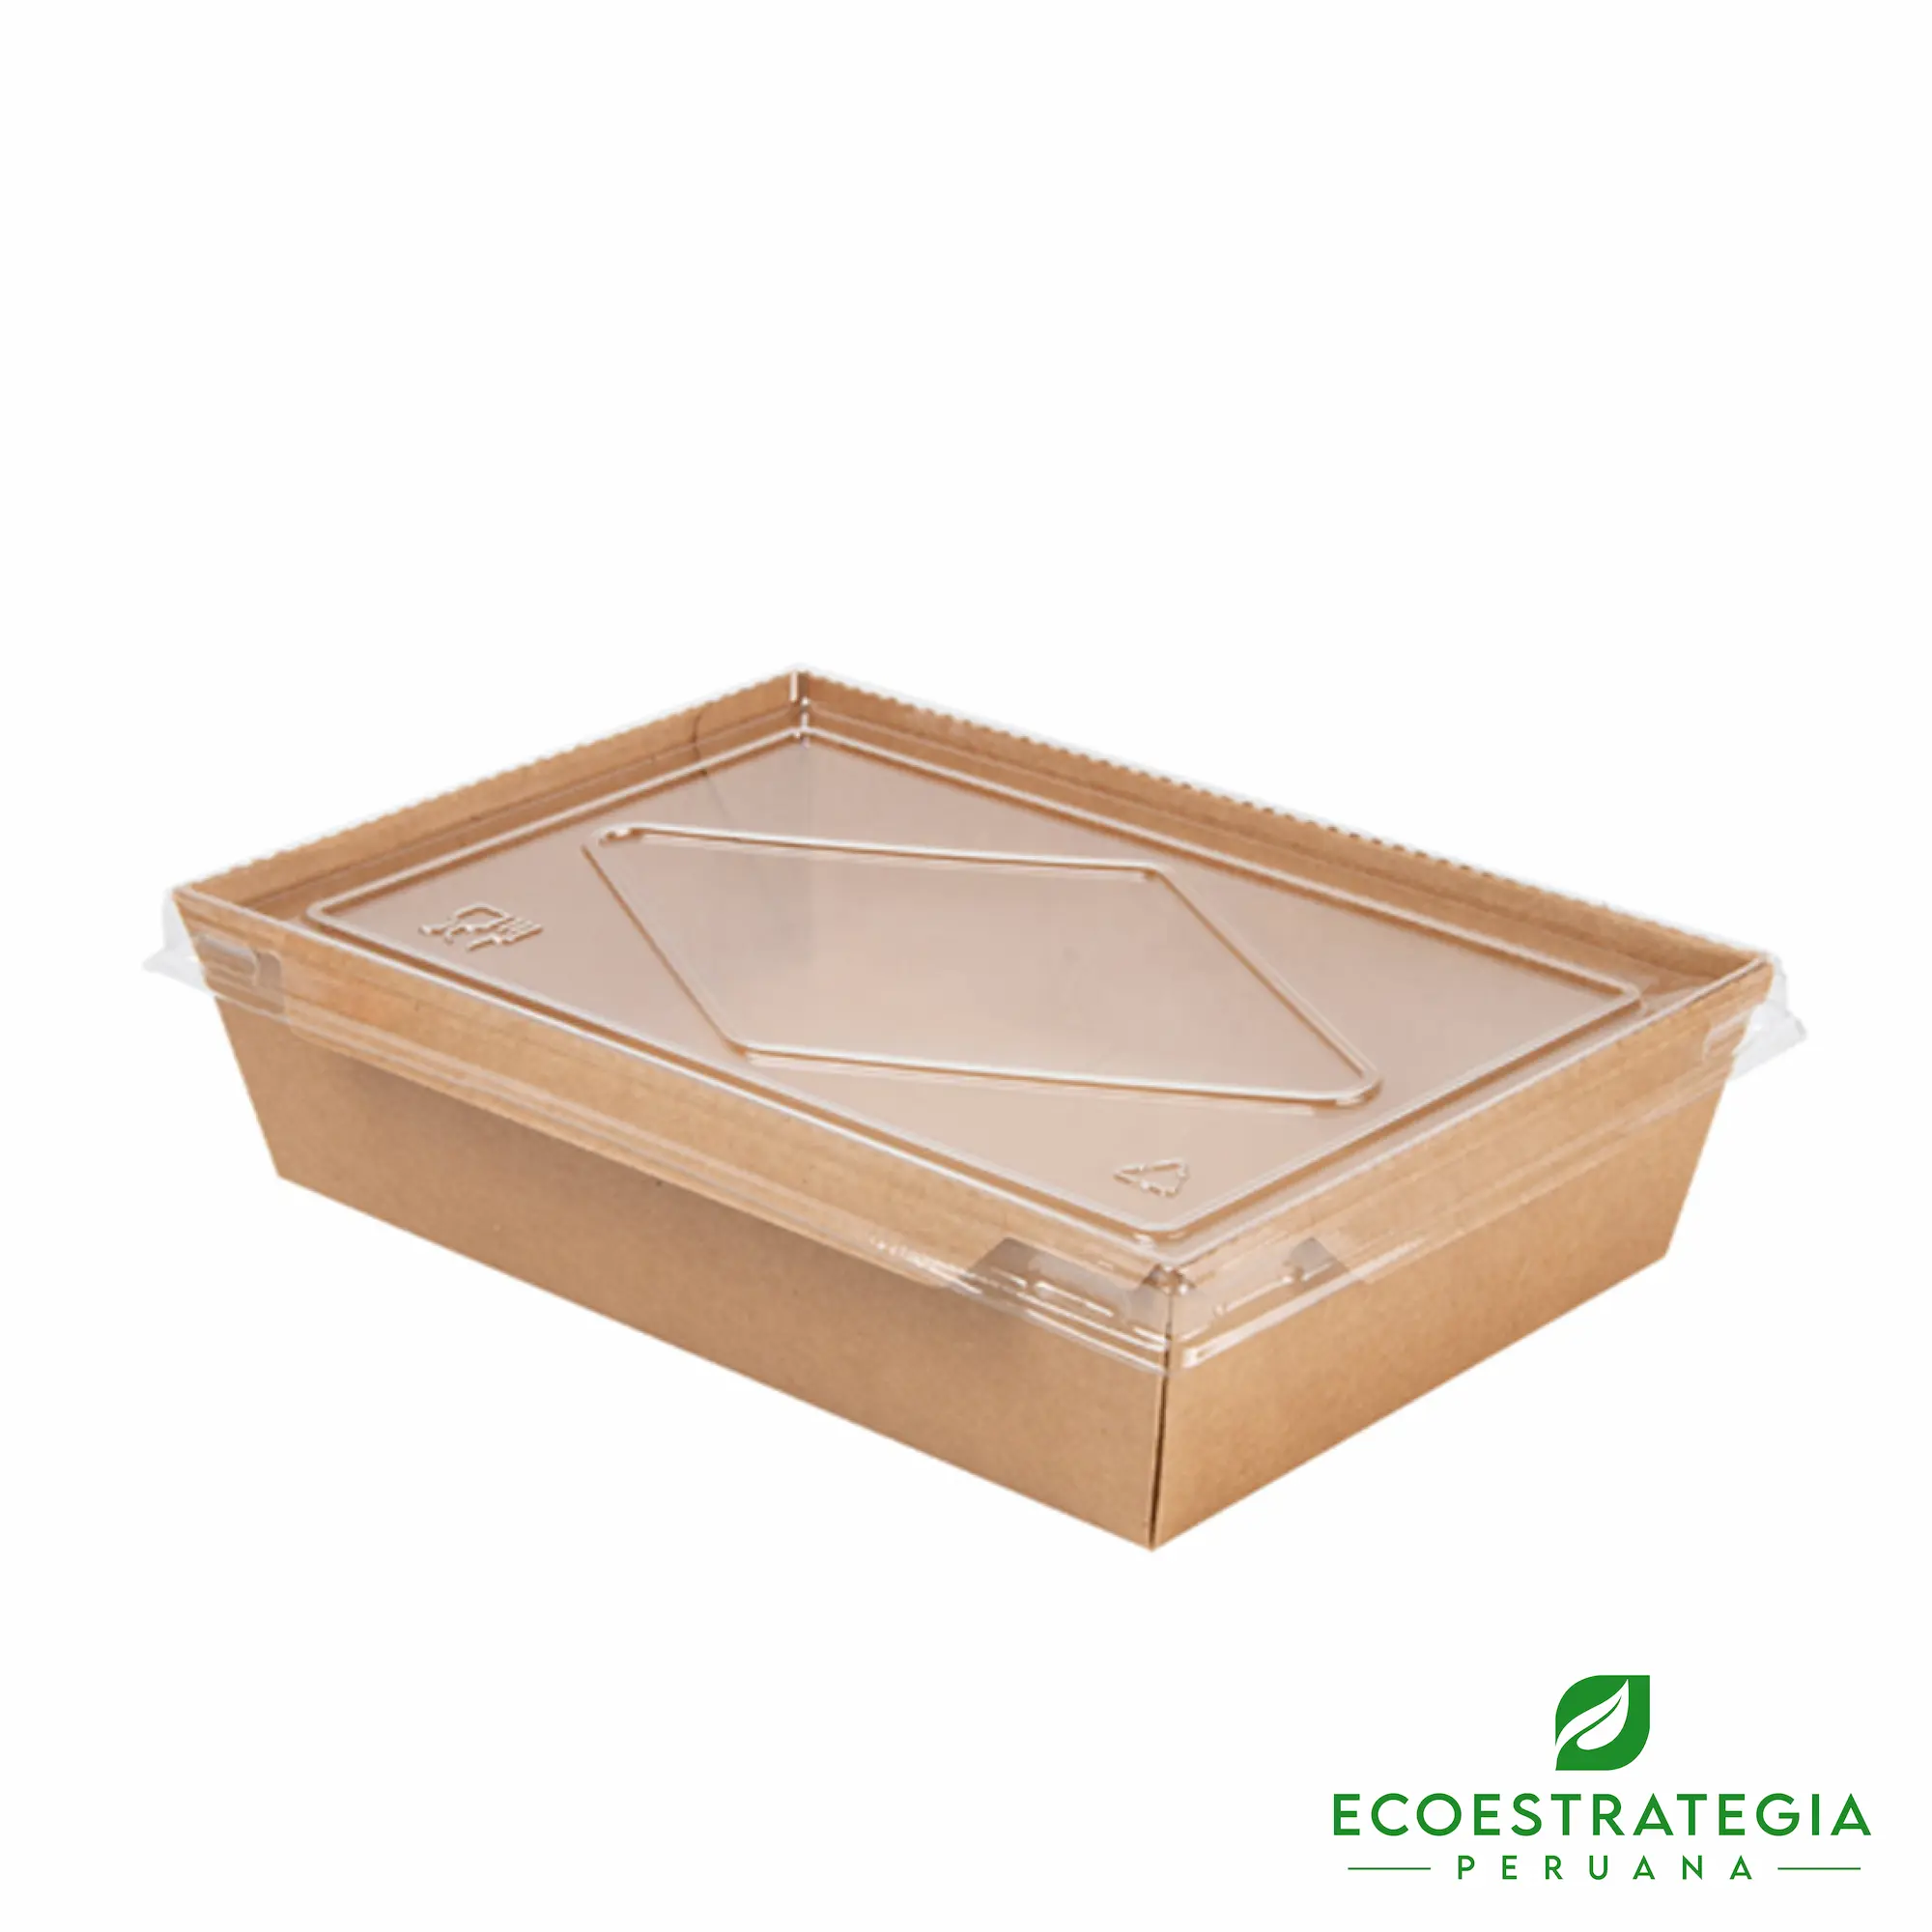 Esta bandeja biodegradable es de 1200ml y es de carton kraft. Envases descartables con gramaje ideal, cotiza tus bandejas, empaques, platos y tapers ecológicos